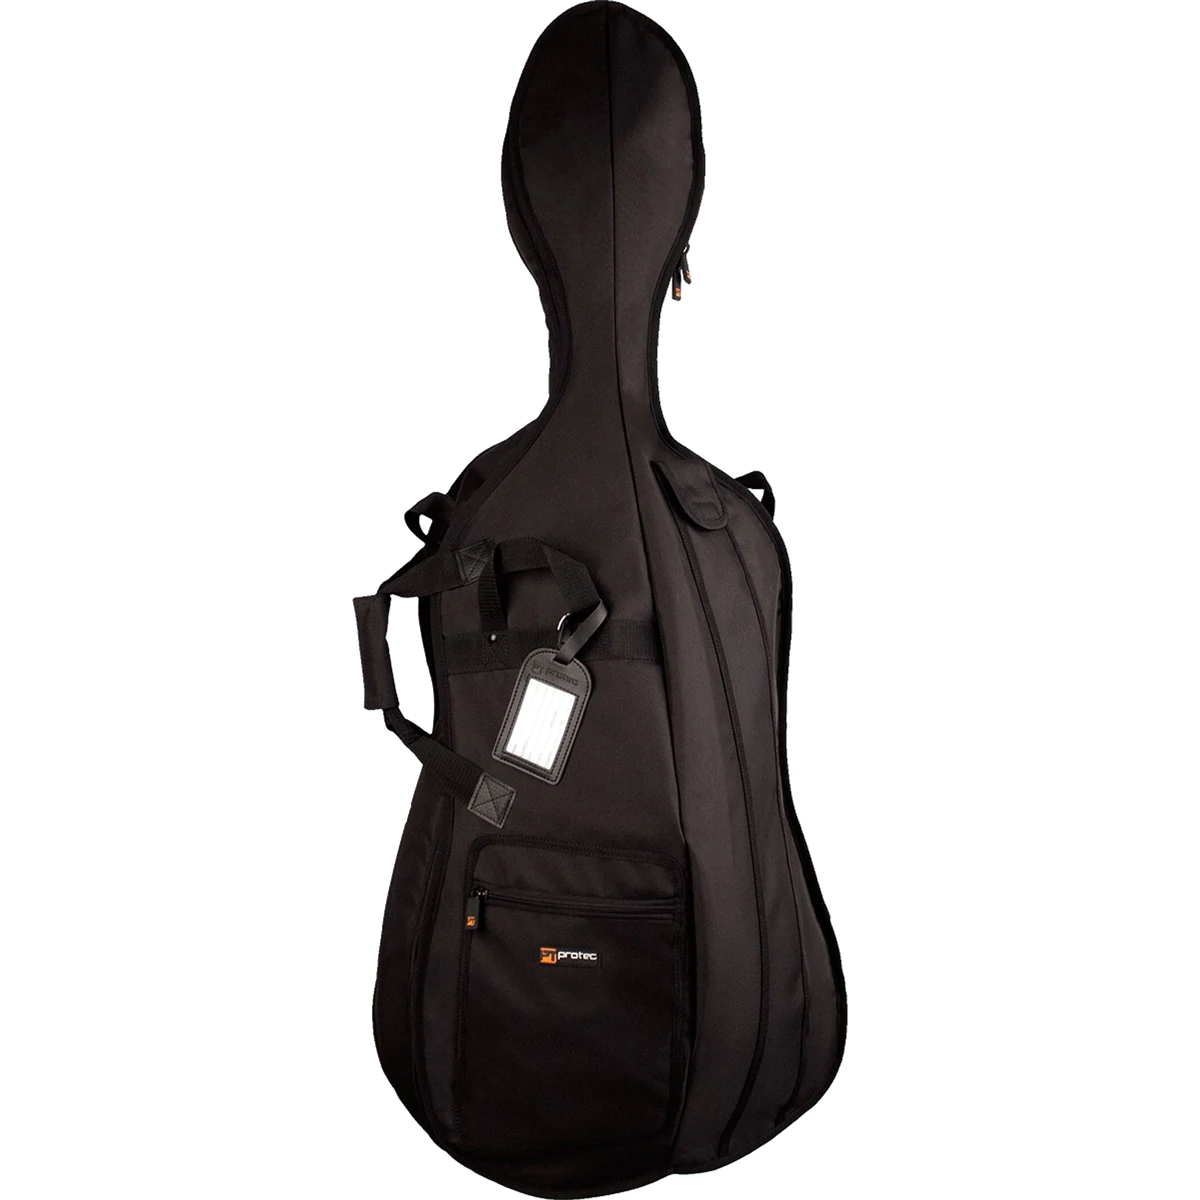 PROTEC 4/4 Cello Gig Bag - Silver Series